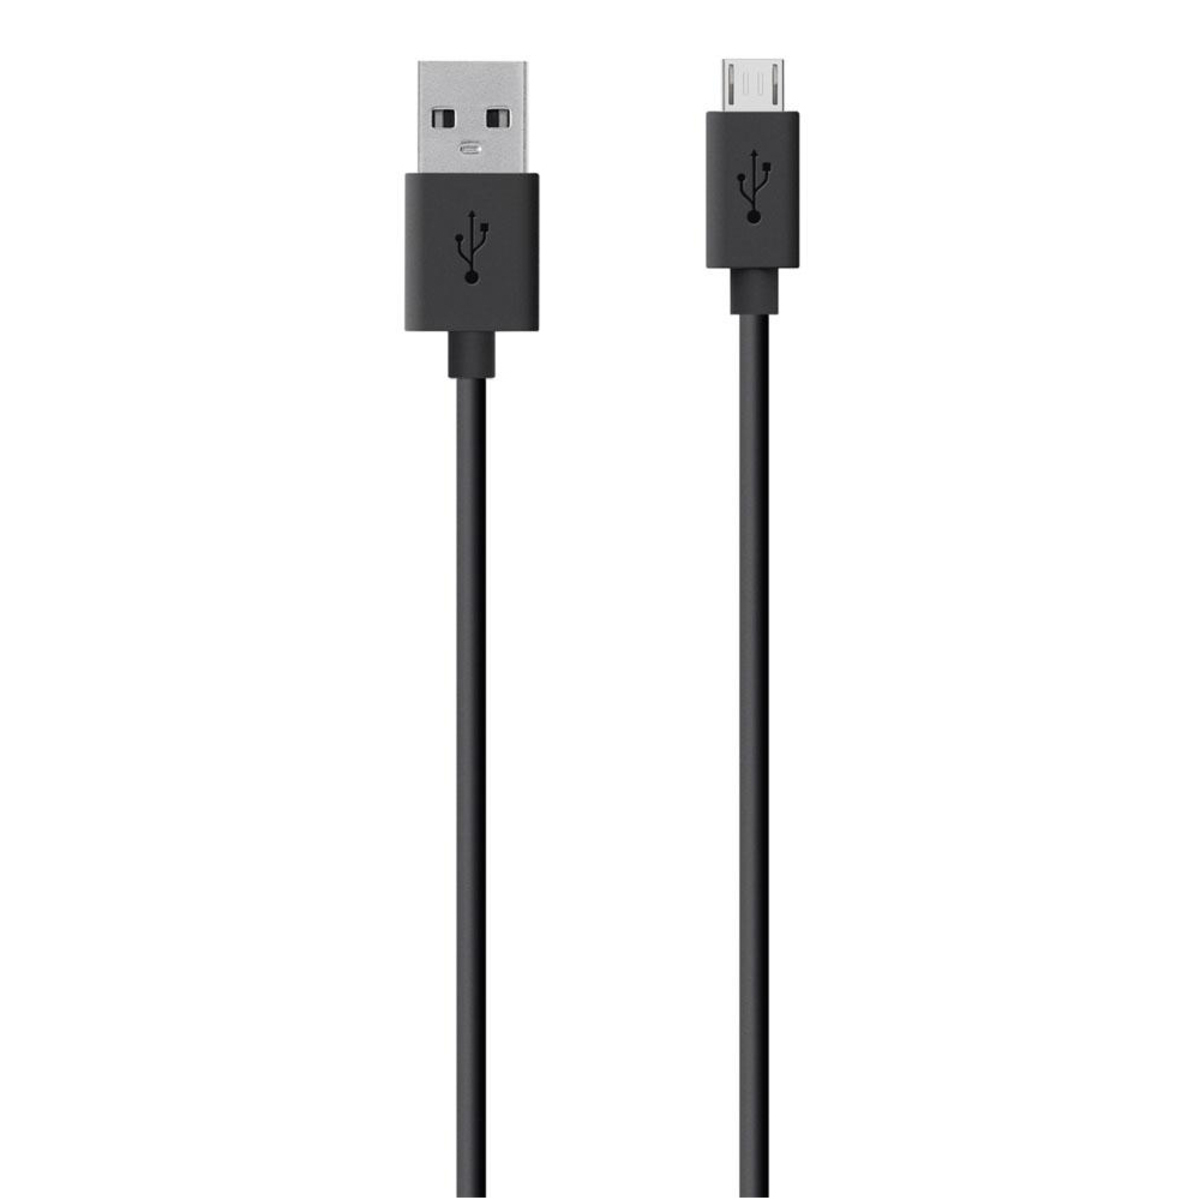 Belkin Micro USB Cable F2CU012BT04